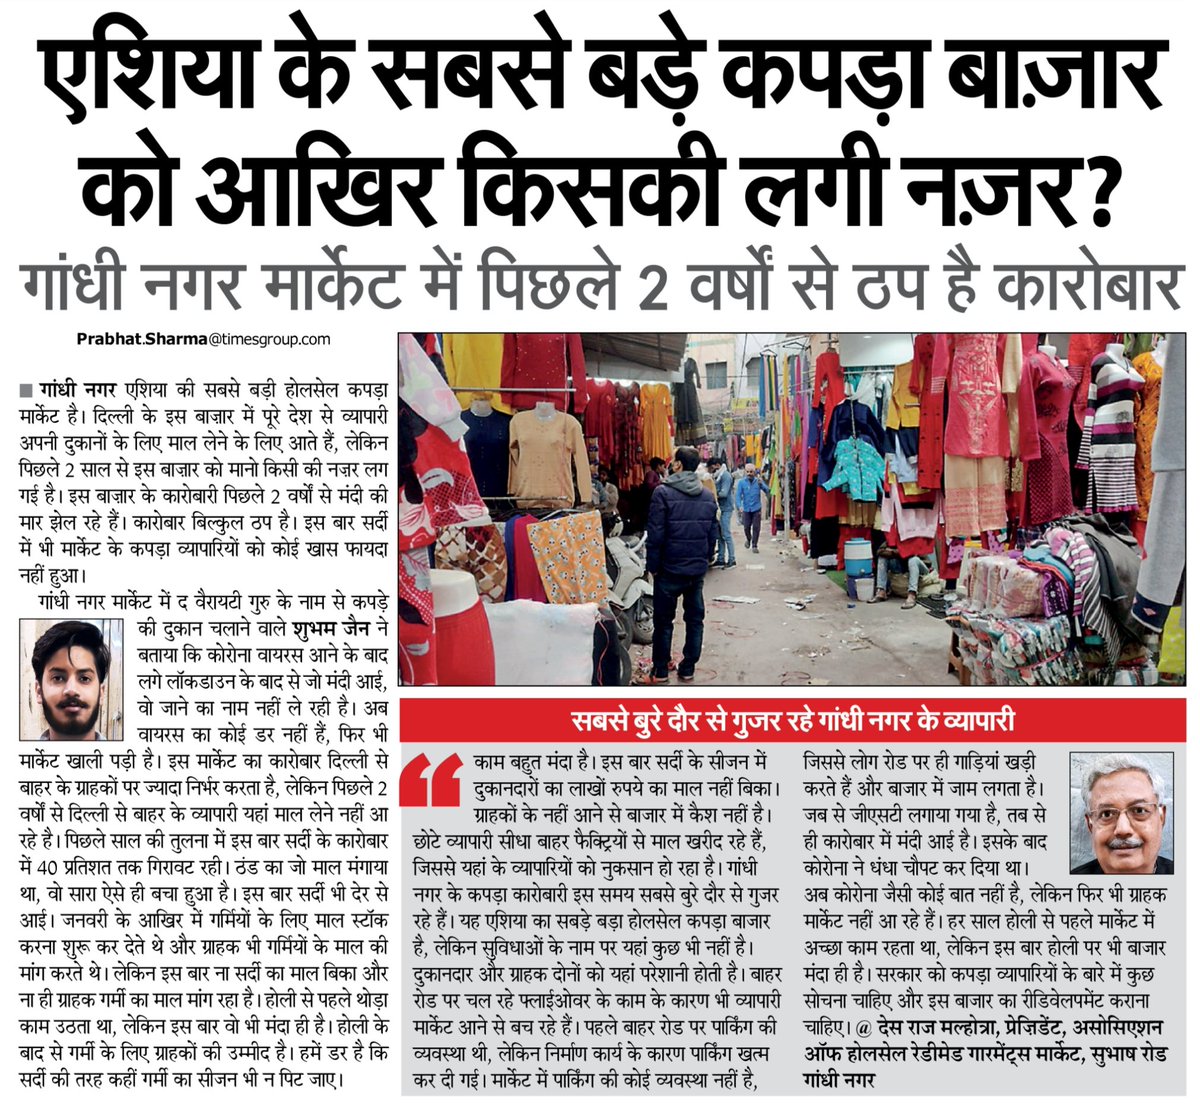 #delhi #GandhiNagarMarket #story 
एशिया के सबसे बड़े कपड़ा बाज़ार को आखिर किसकी लगी नज़र? पढ़िए गांधी नगर मार्केट से मेरी ये रिपोर्ट...
.
#Garments #Business #Reporting @SandhyaTimes4u @NBTDilli